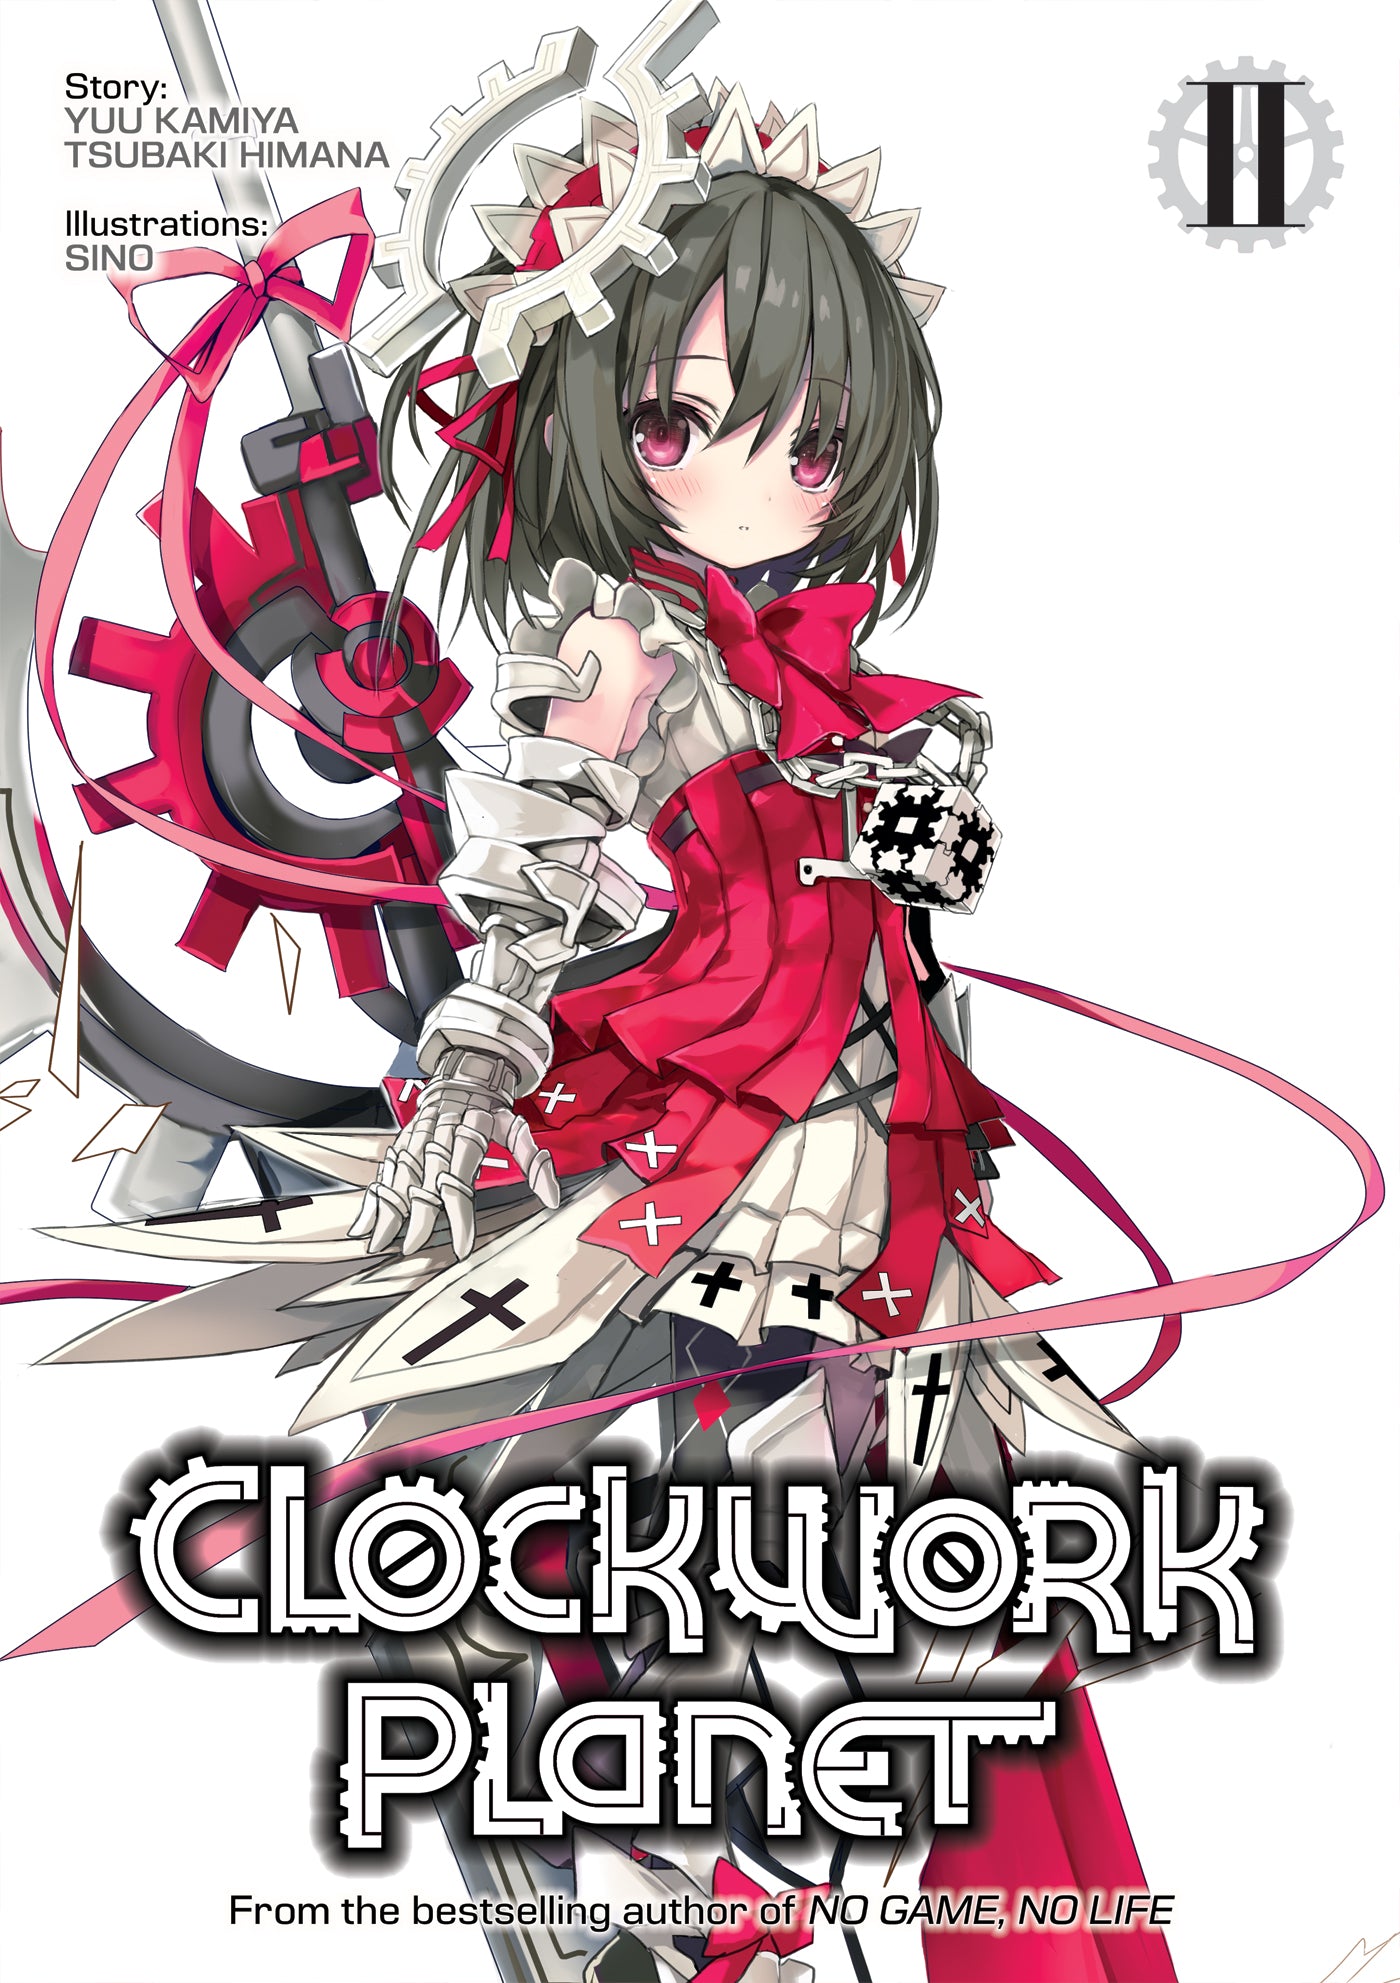 Clockwork Planet (Light Novel) Vol. 02 (Out of Stock Indefinitely)